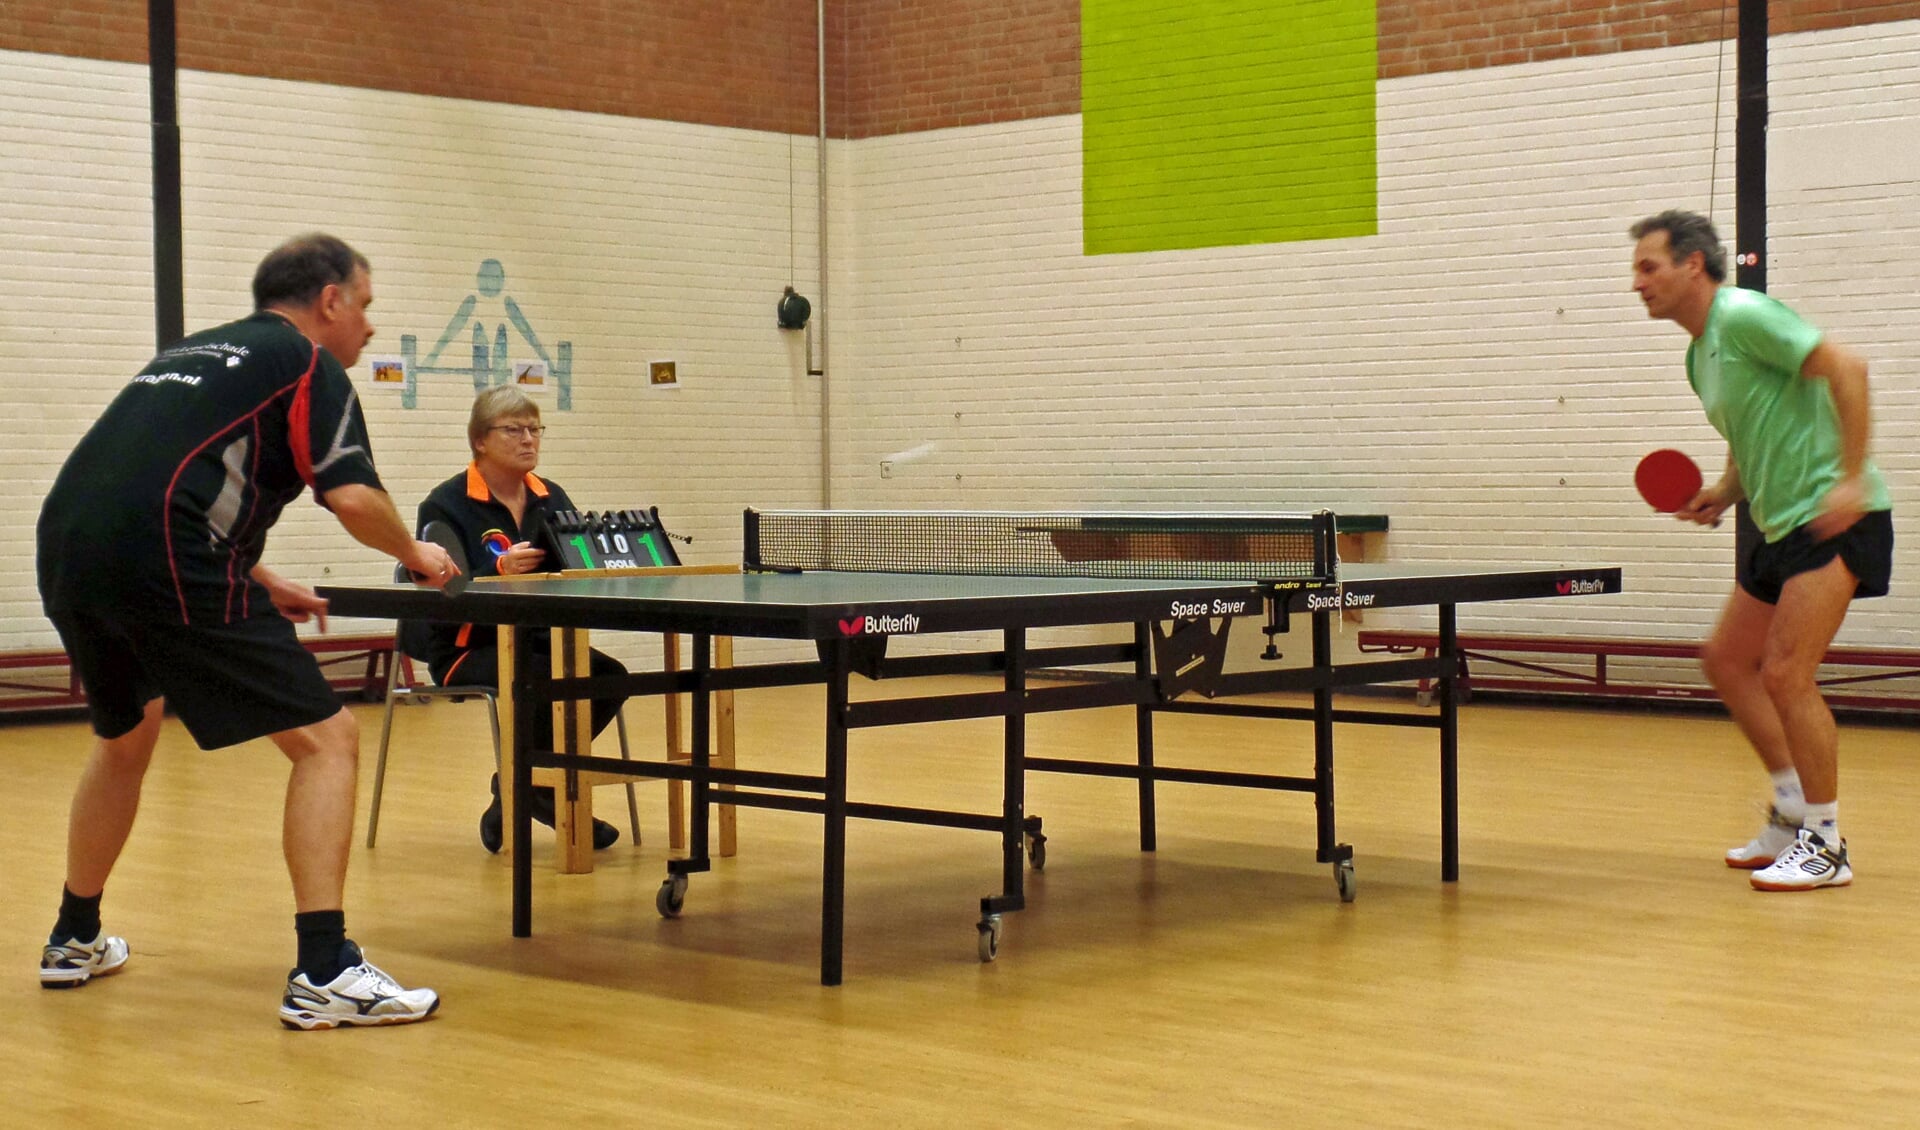 Finale ‘Open Son en Breugelse Tafeltenniskampioenschappen 2017’ met winnaar John de Jong (re) en Joost van den Buijs (li).  